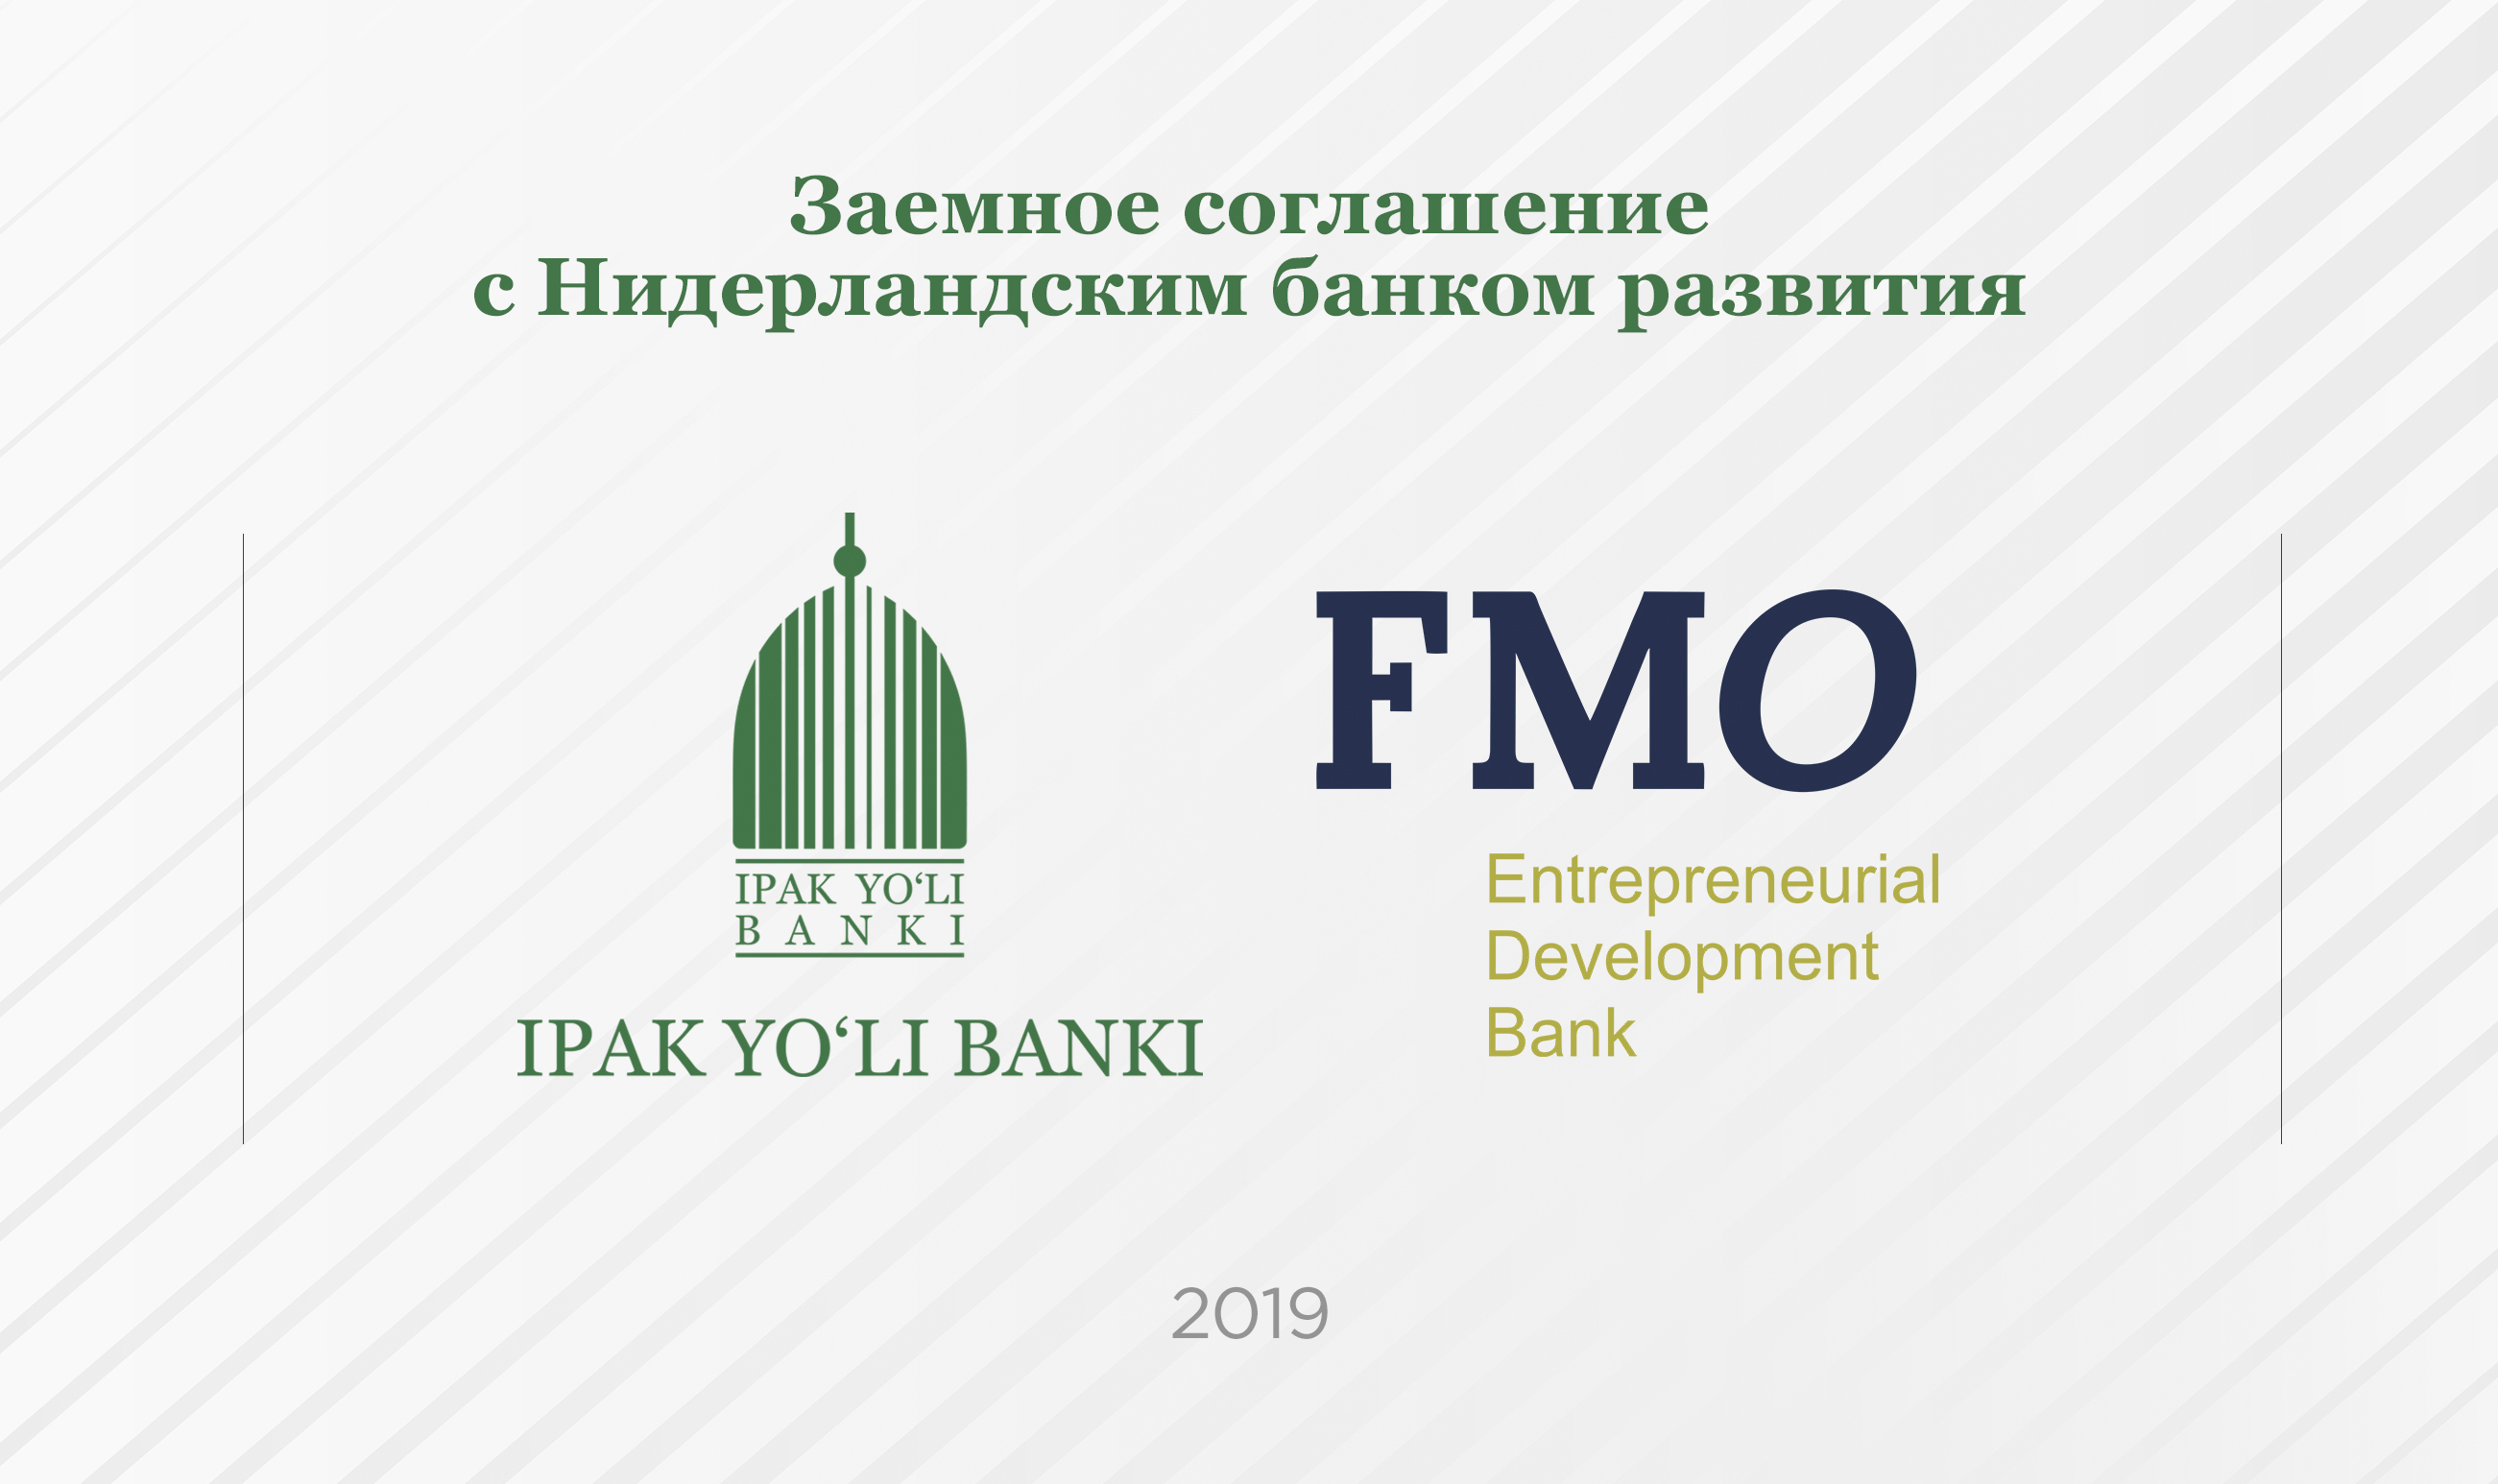 Банк «Ипак Йули» и Нидерландский банк развития FMO подписали заемное соглашение на 20 миллионов долларов 